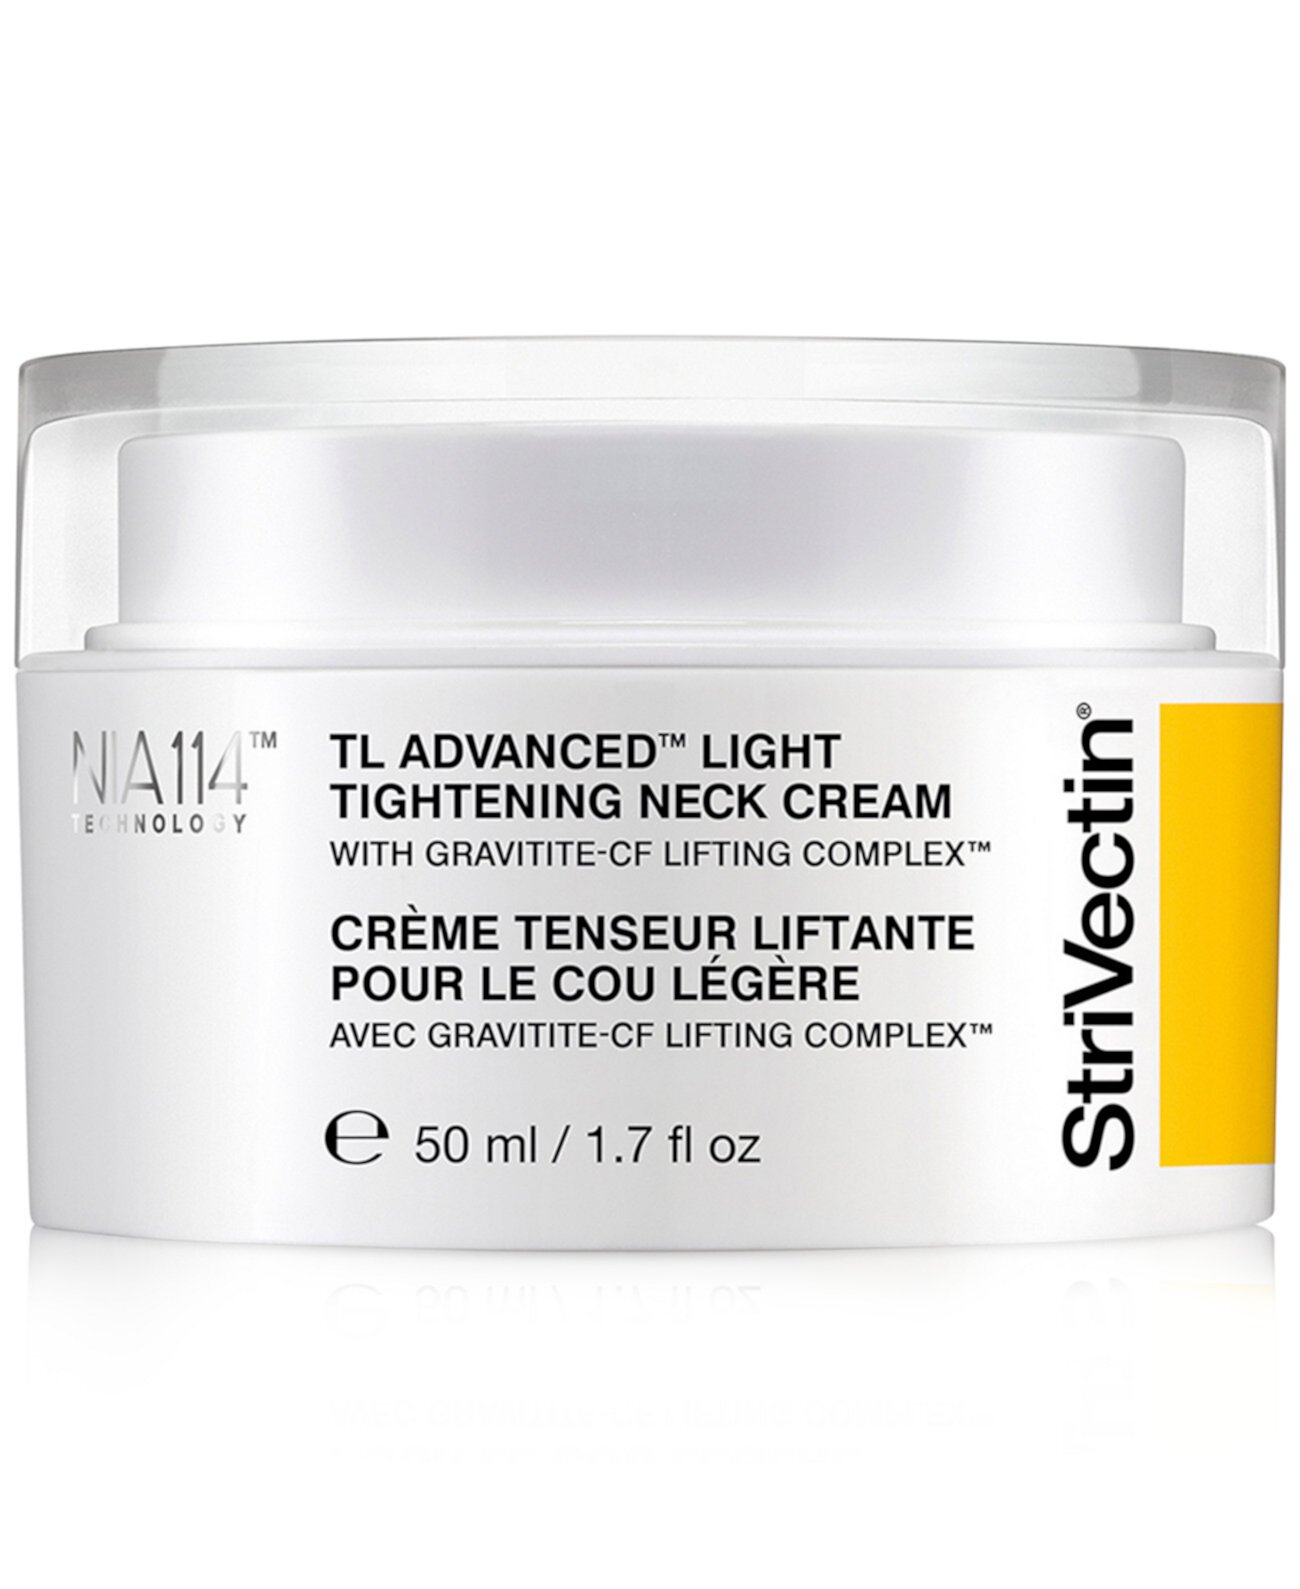 TL Advanced Light Подтягивающий крем для шеи, 1,7 унции StriVectin